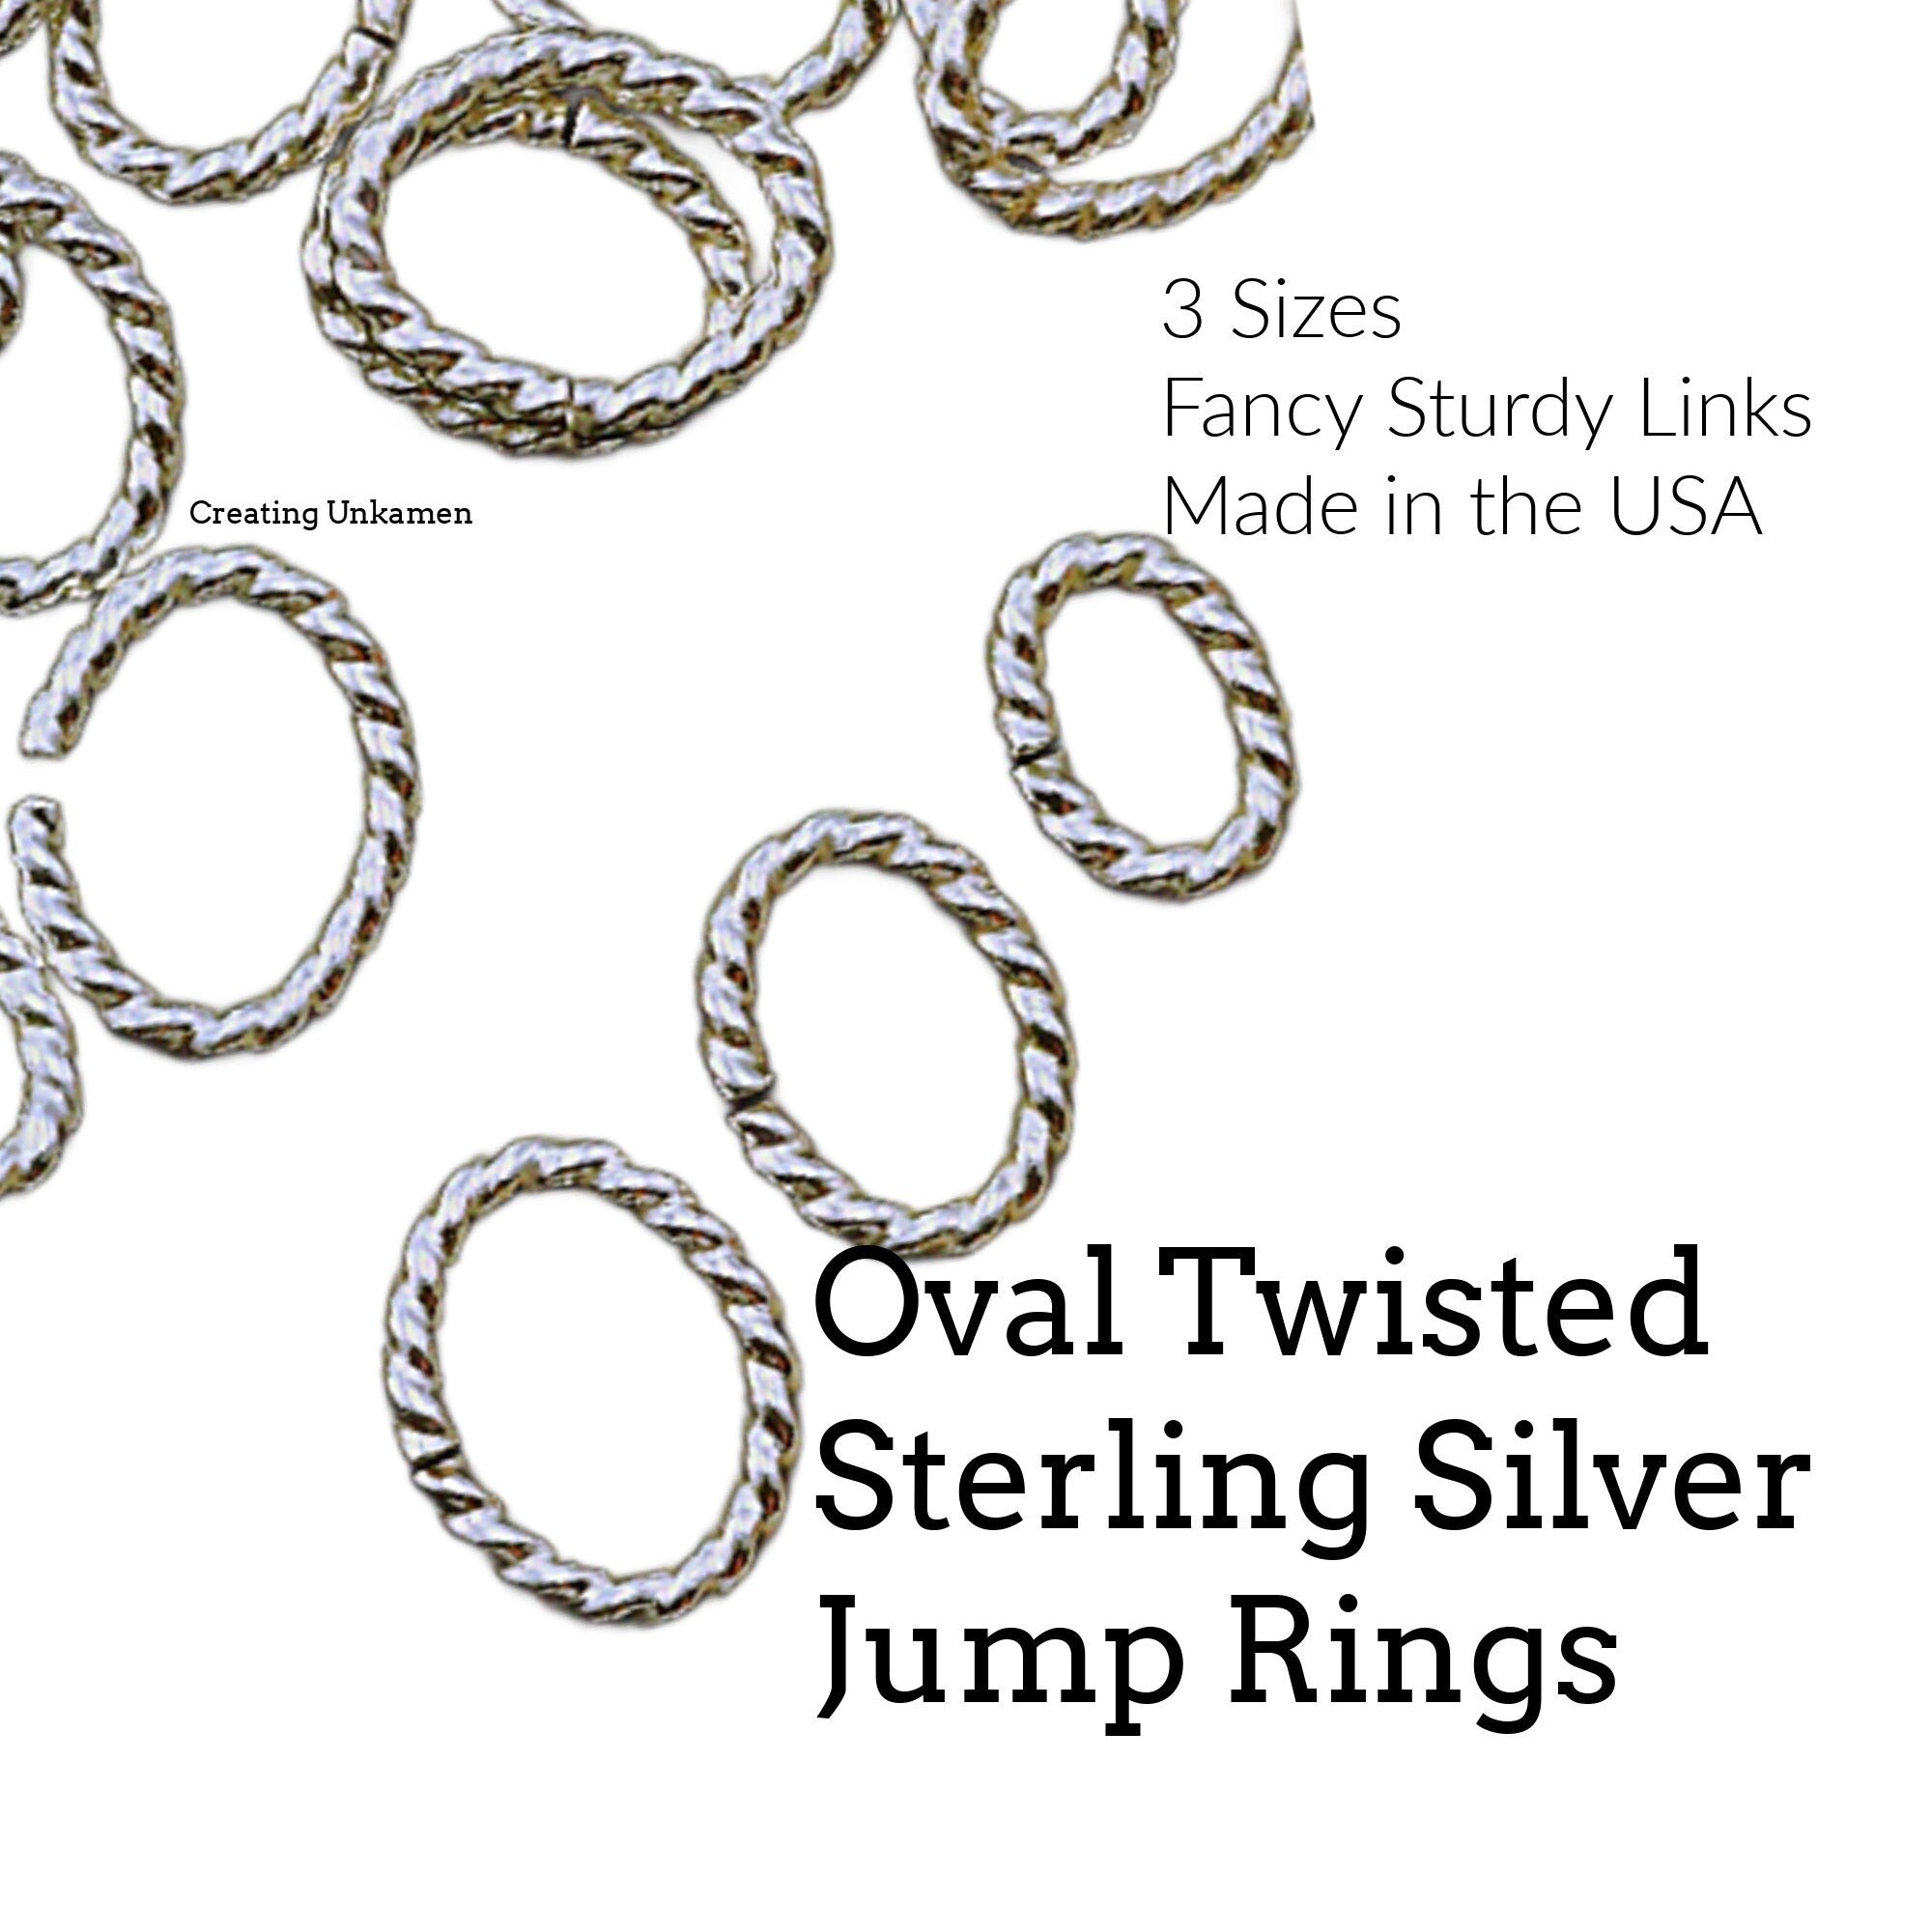 50 Custom Handmade Sterling Silver Jump Rings You Pick Gauge and Diameter 